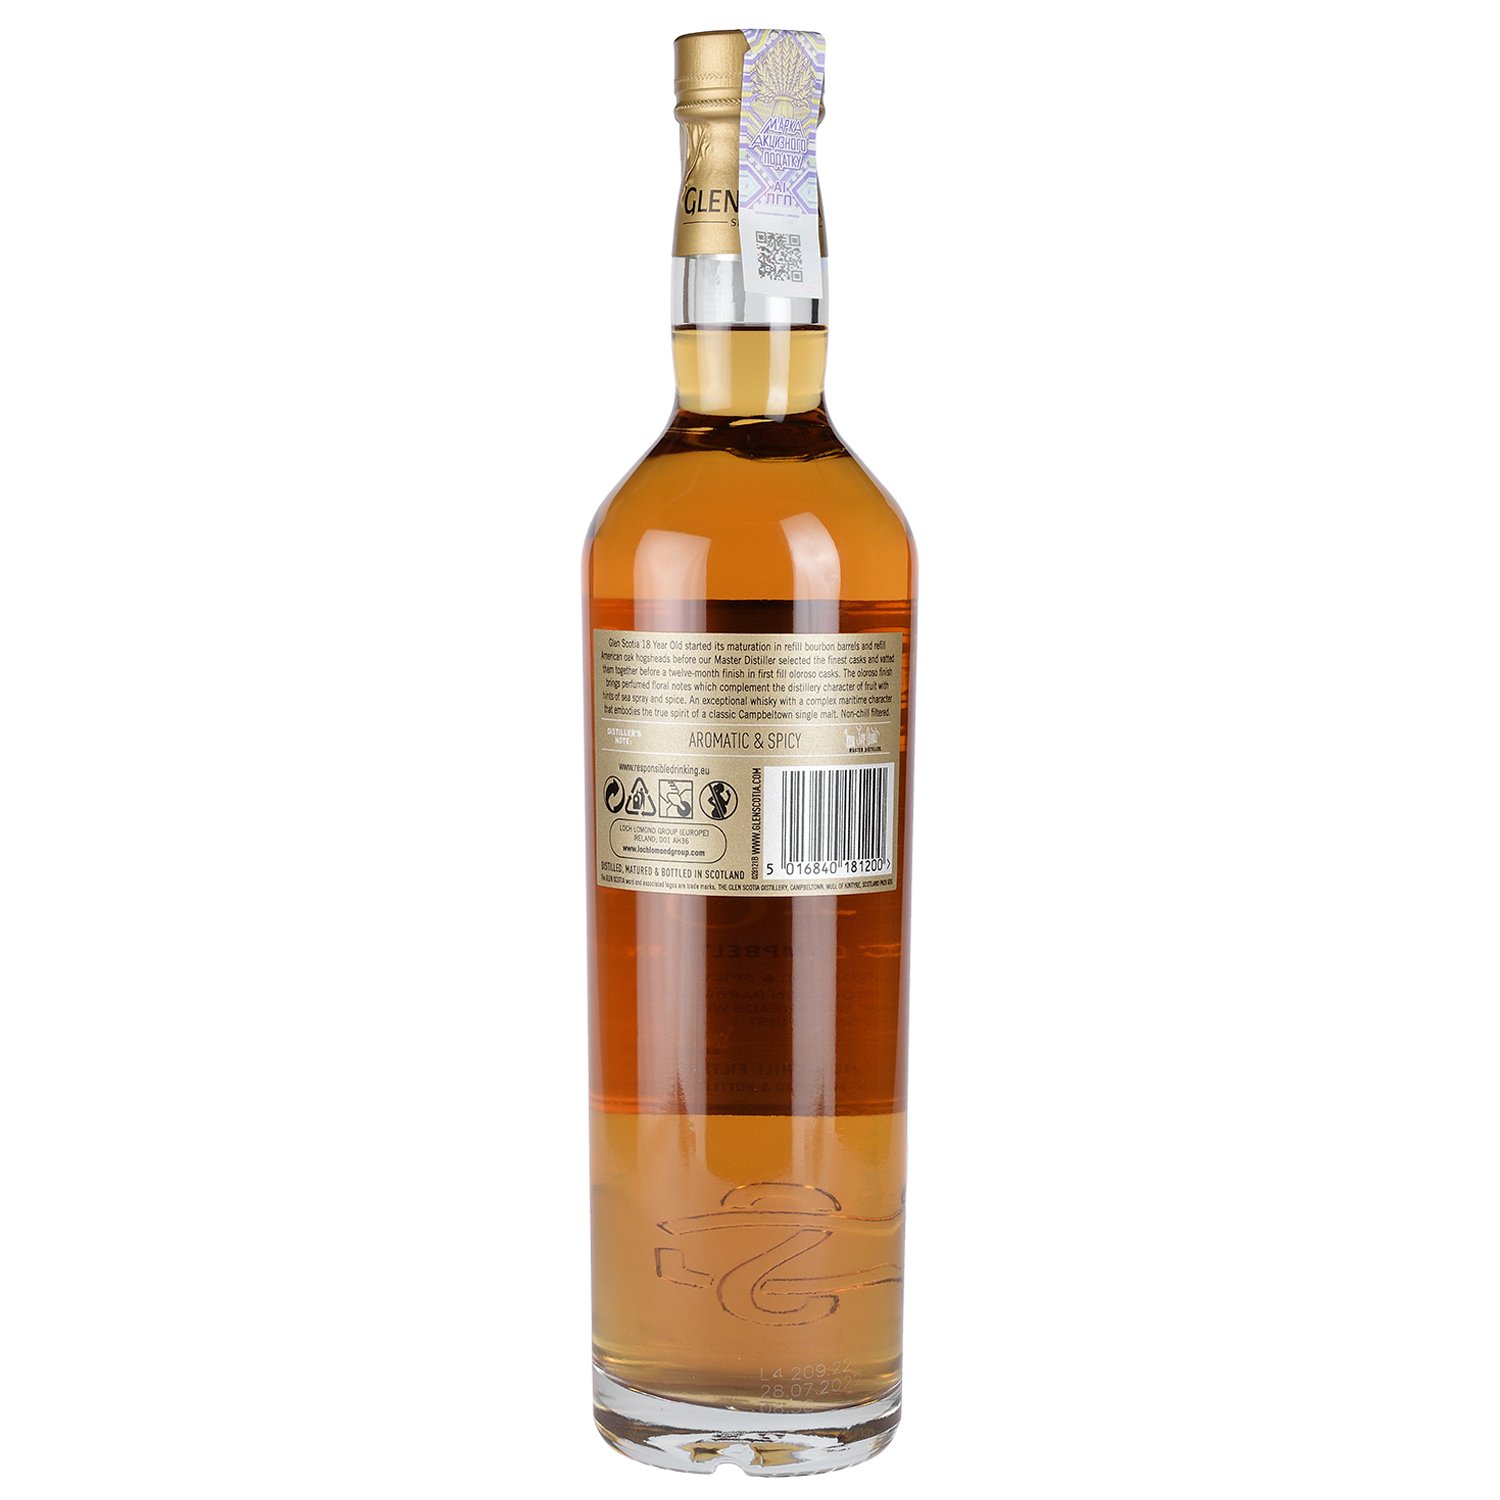 Виски Glen Scotia Single Malt Scotch Whisky 18 yo, в подарочной упаковке, 46%, 0,7 л - фото 2